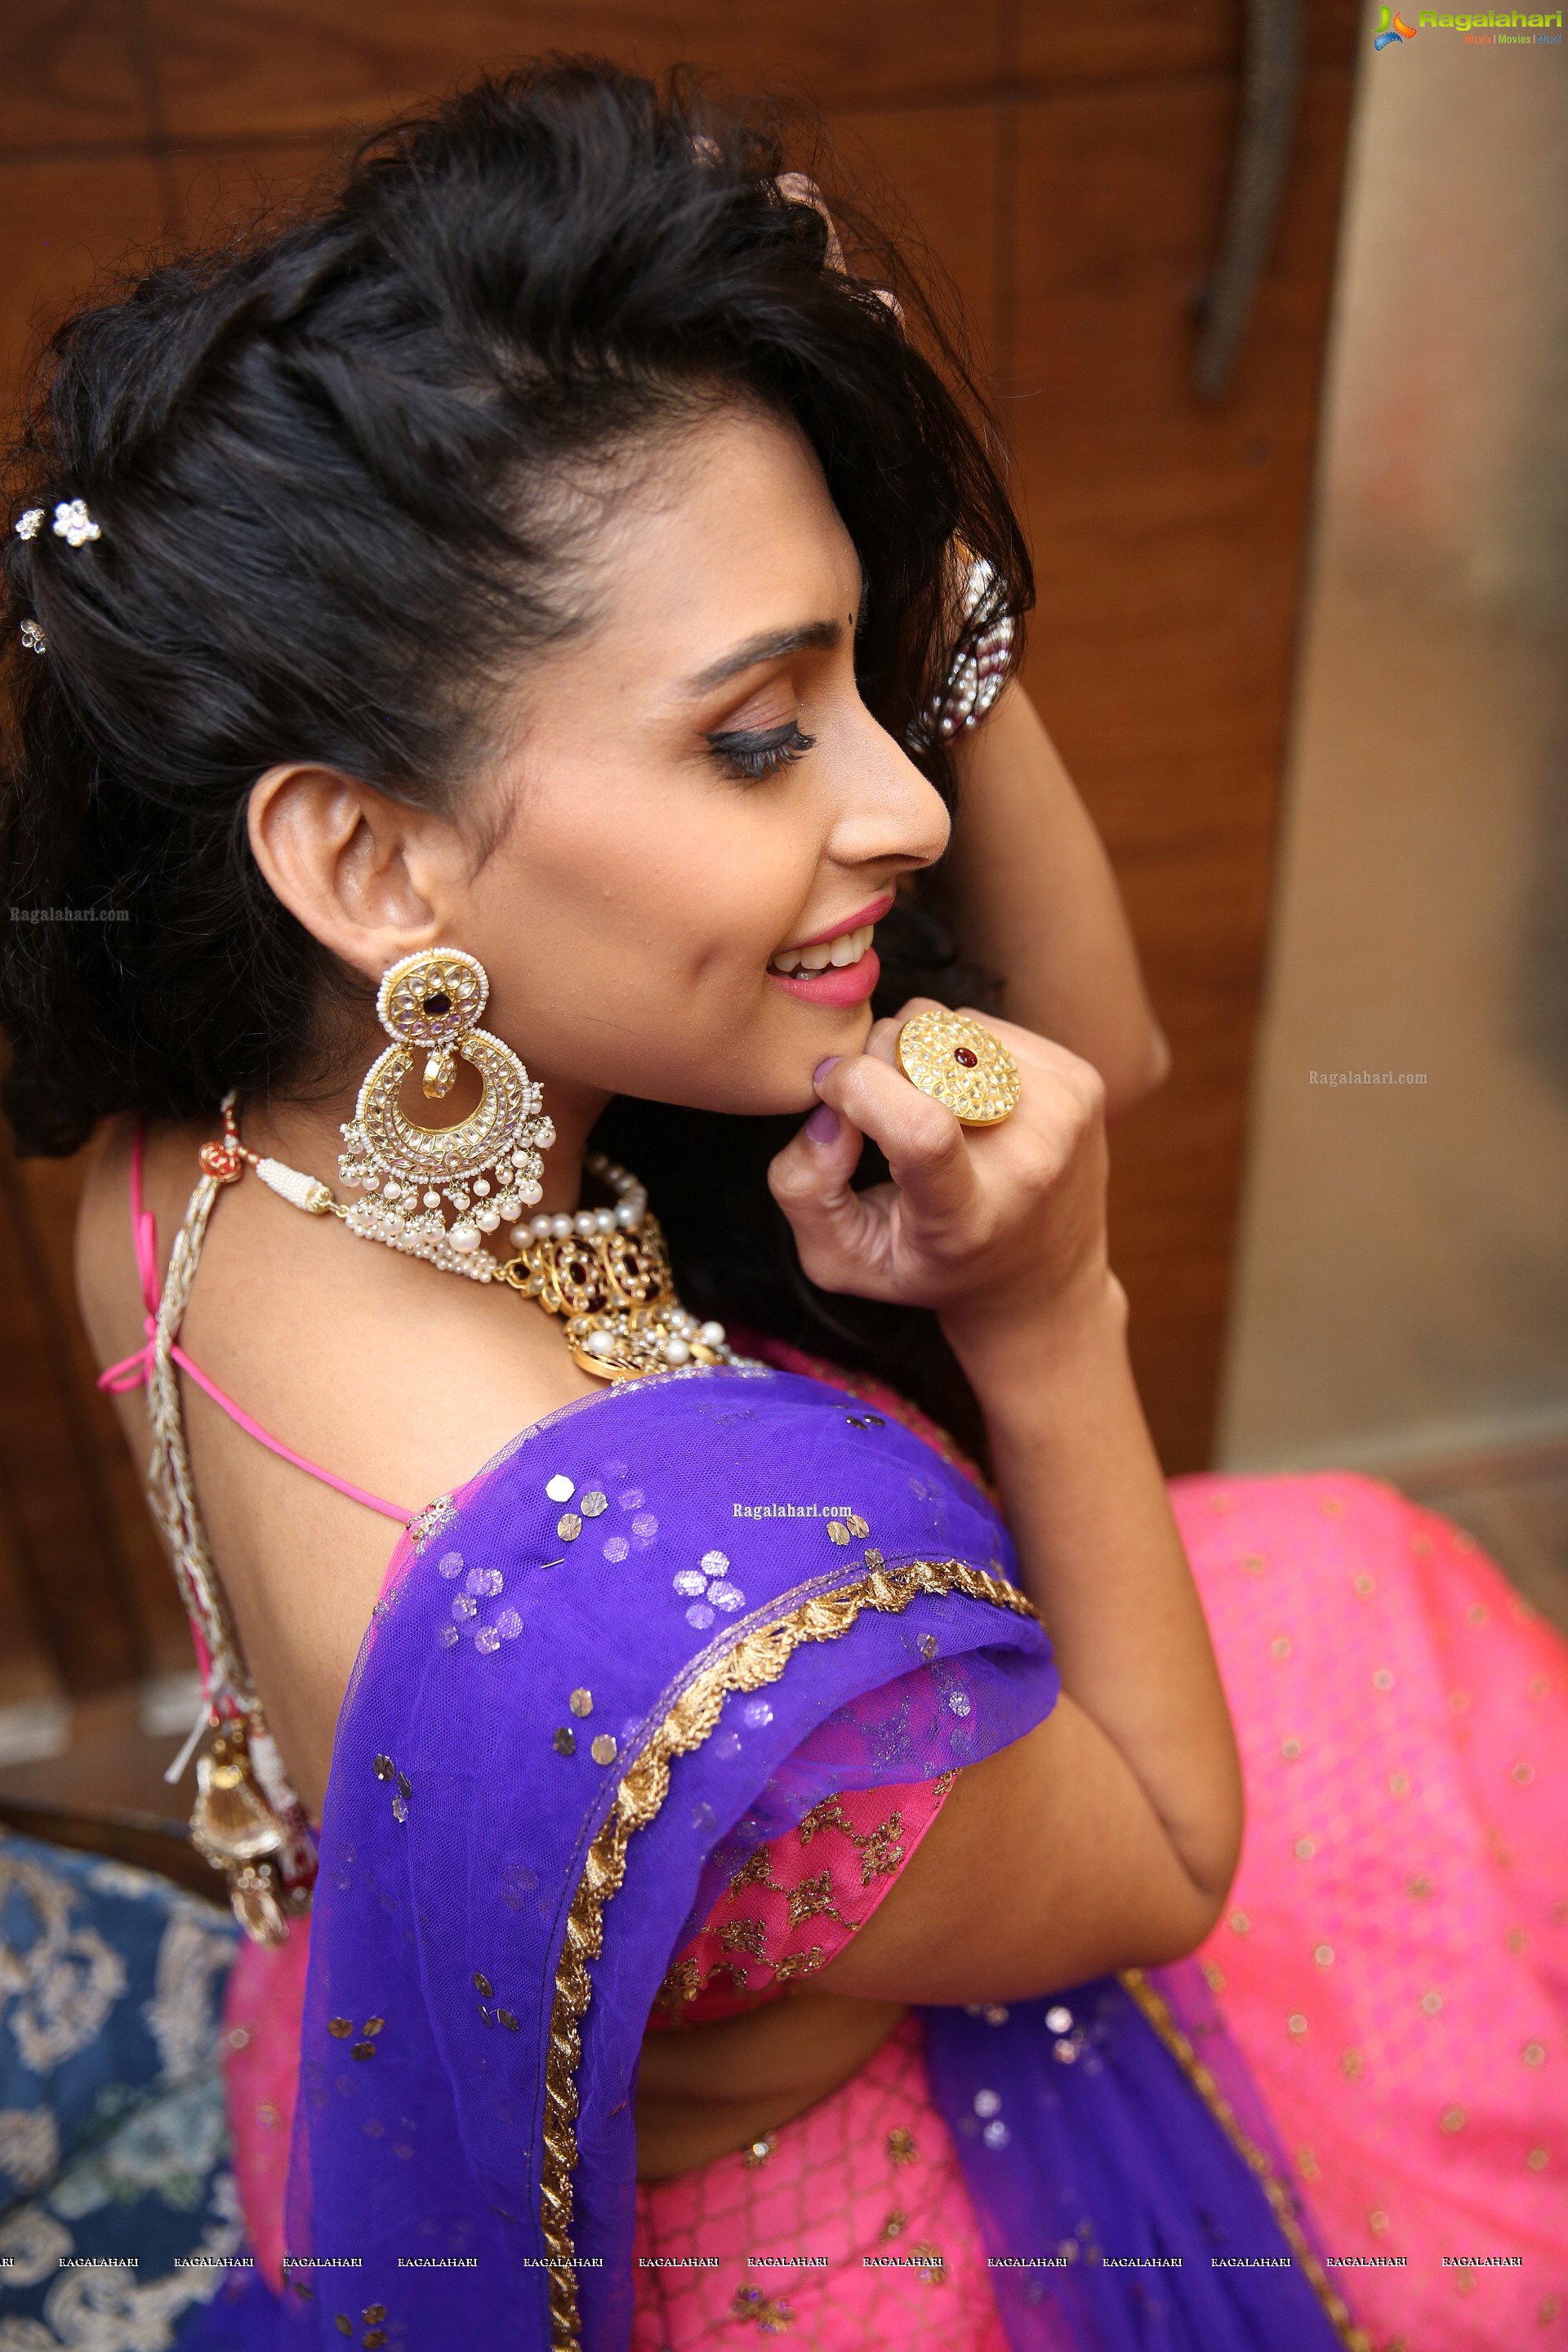 Nitya Naresh @ Aasha's Tyaani By Karan Johar Exclusive Preview - HD Gallery